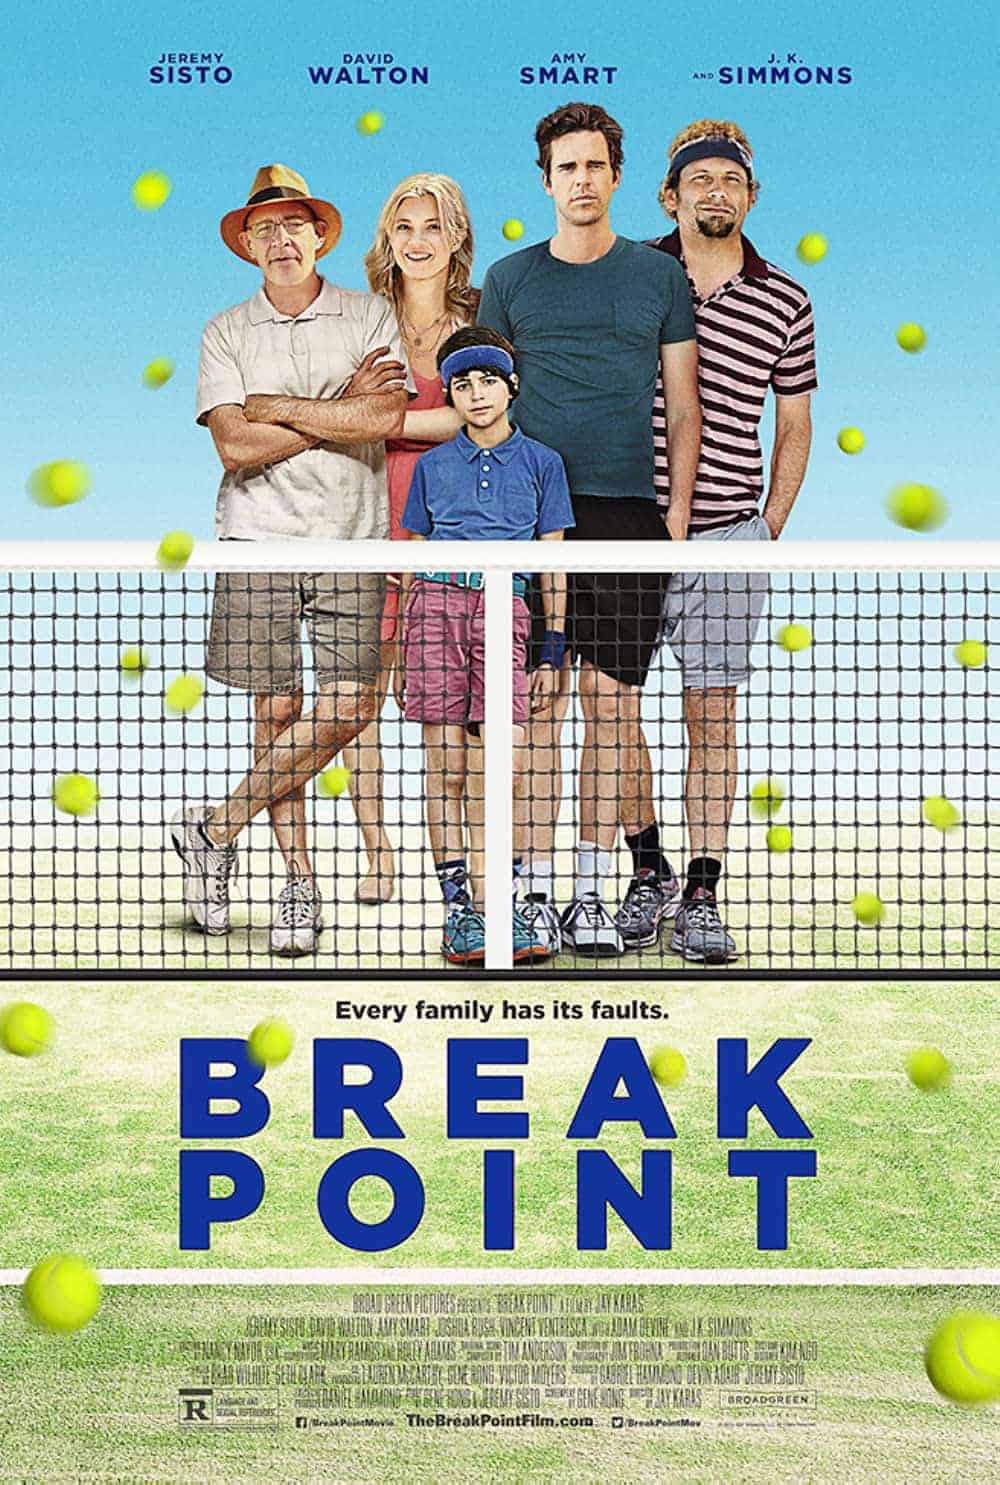 Break Point (2014) Best Tennis Movies to Add in Your Watchlist